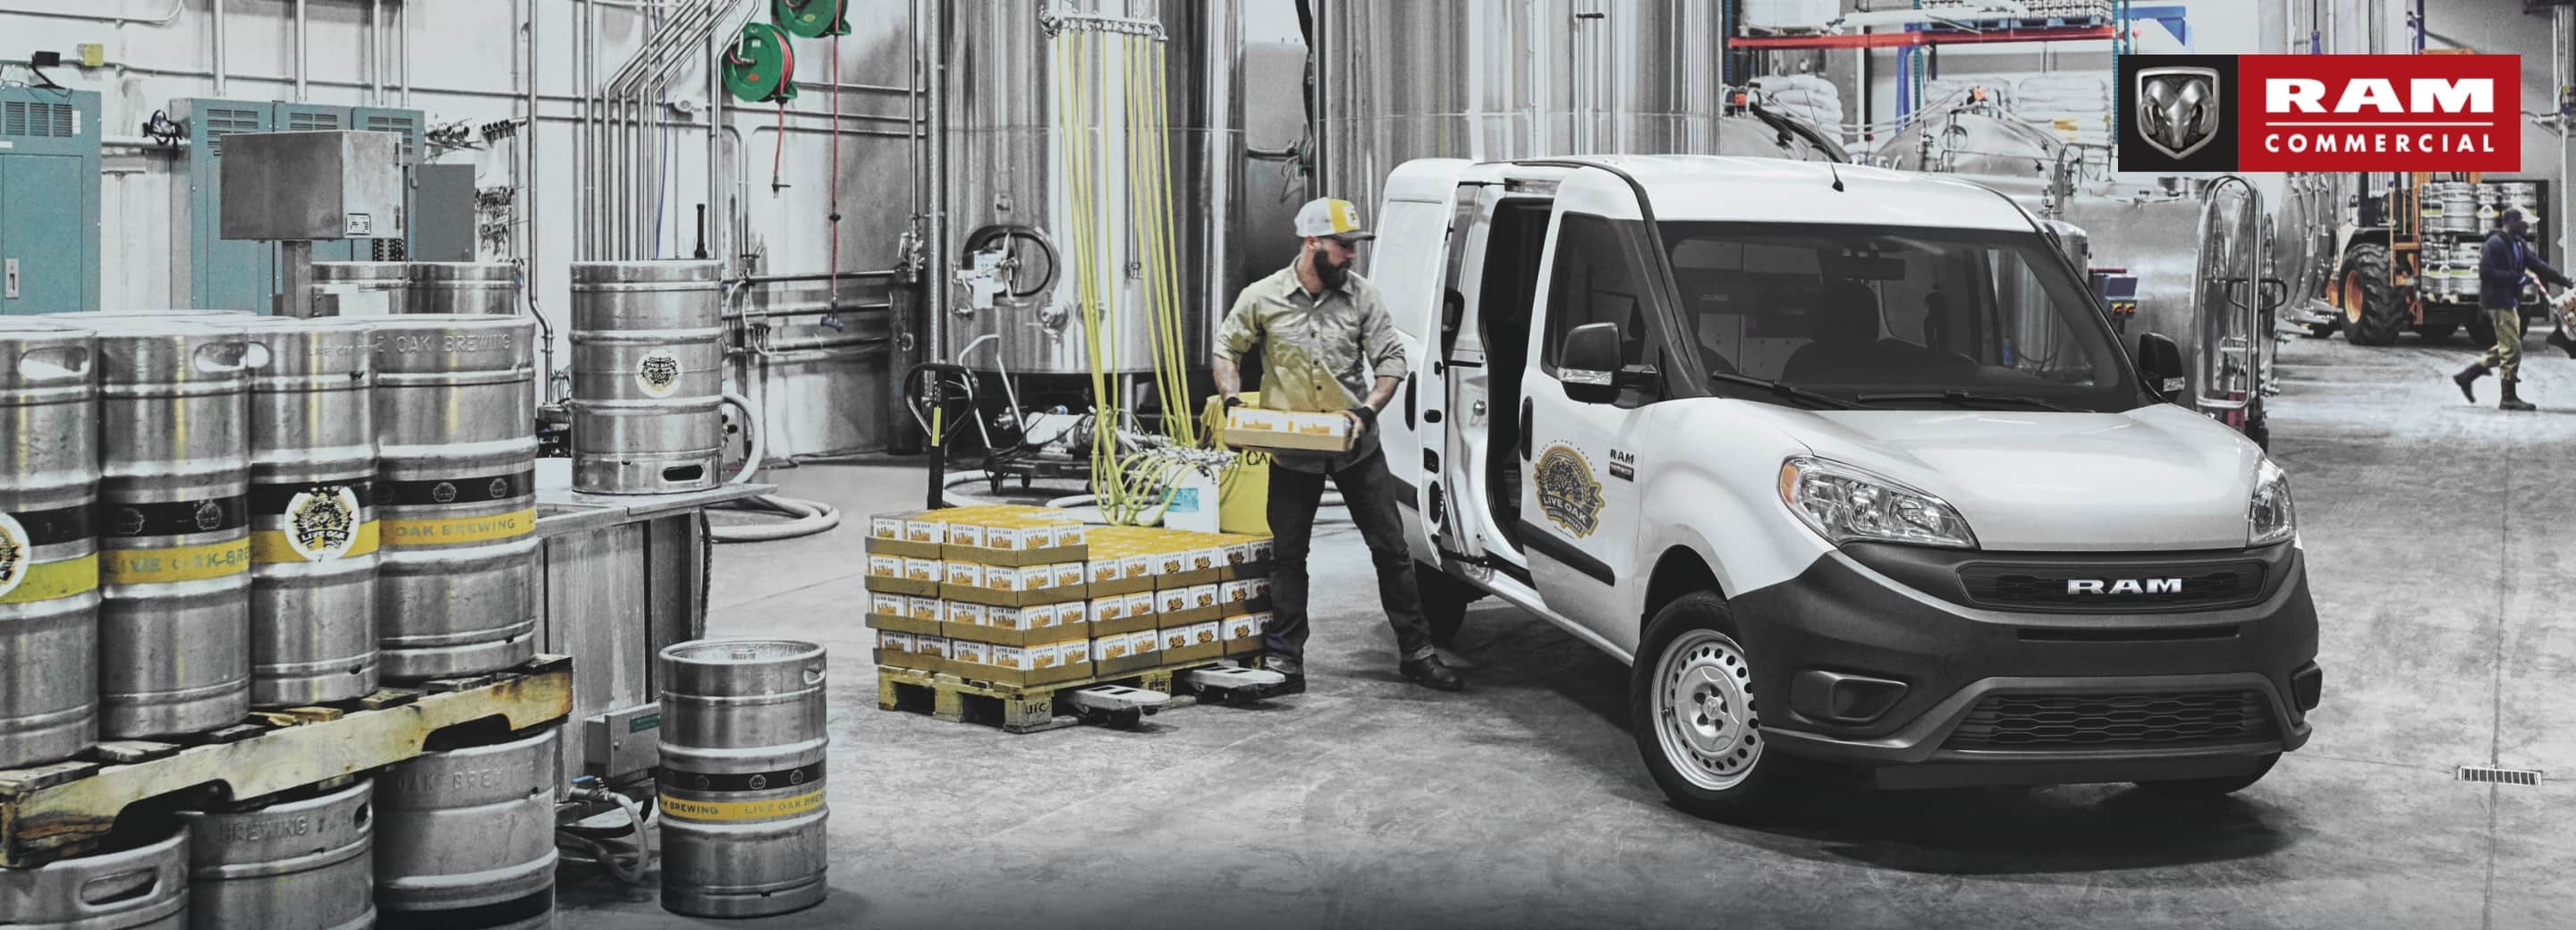 Una Cargo Van Ram ProMaster City Tradesman 2021 estacionada en un almacén y un hombre cargando cajas de artículos a través de la puerta deslizable lateral. El logo de la Ram comercial.